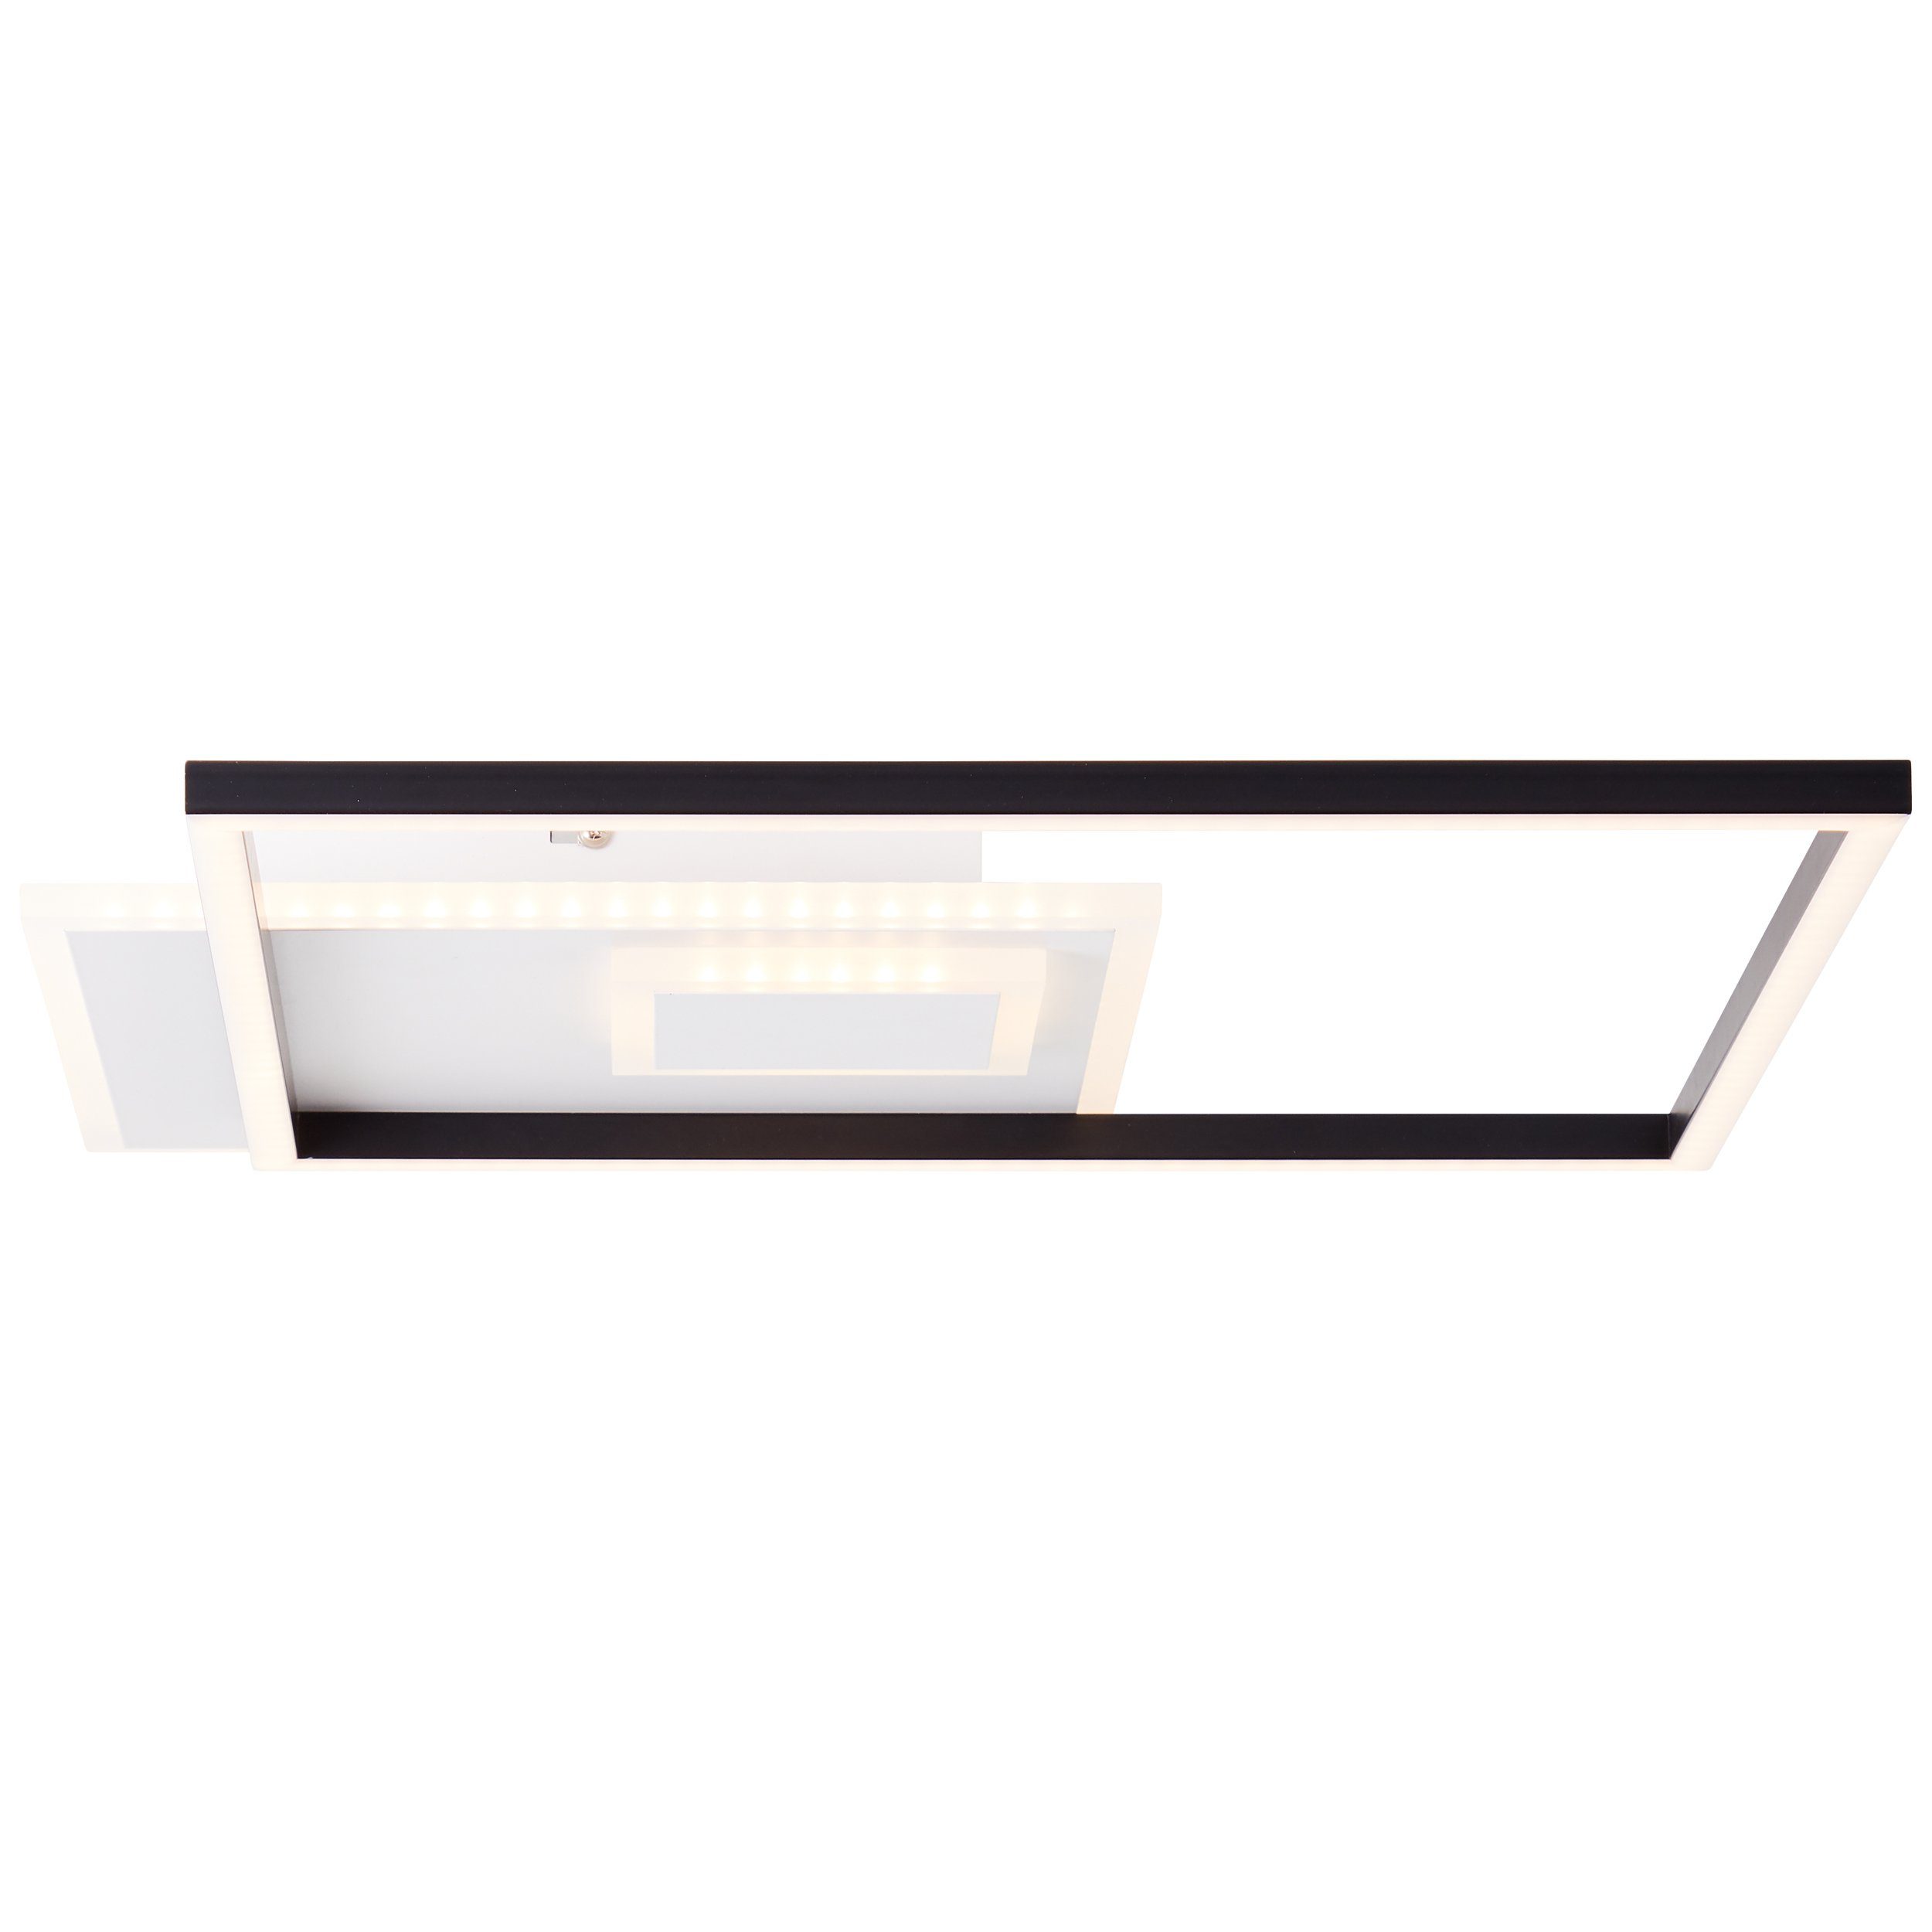 Brilliant Aufbauleuchte Iorgo, Iorgo LED Deckenaufbau-Paneel 44x44cm schwarz/weiß, Metall/Kunststoff